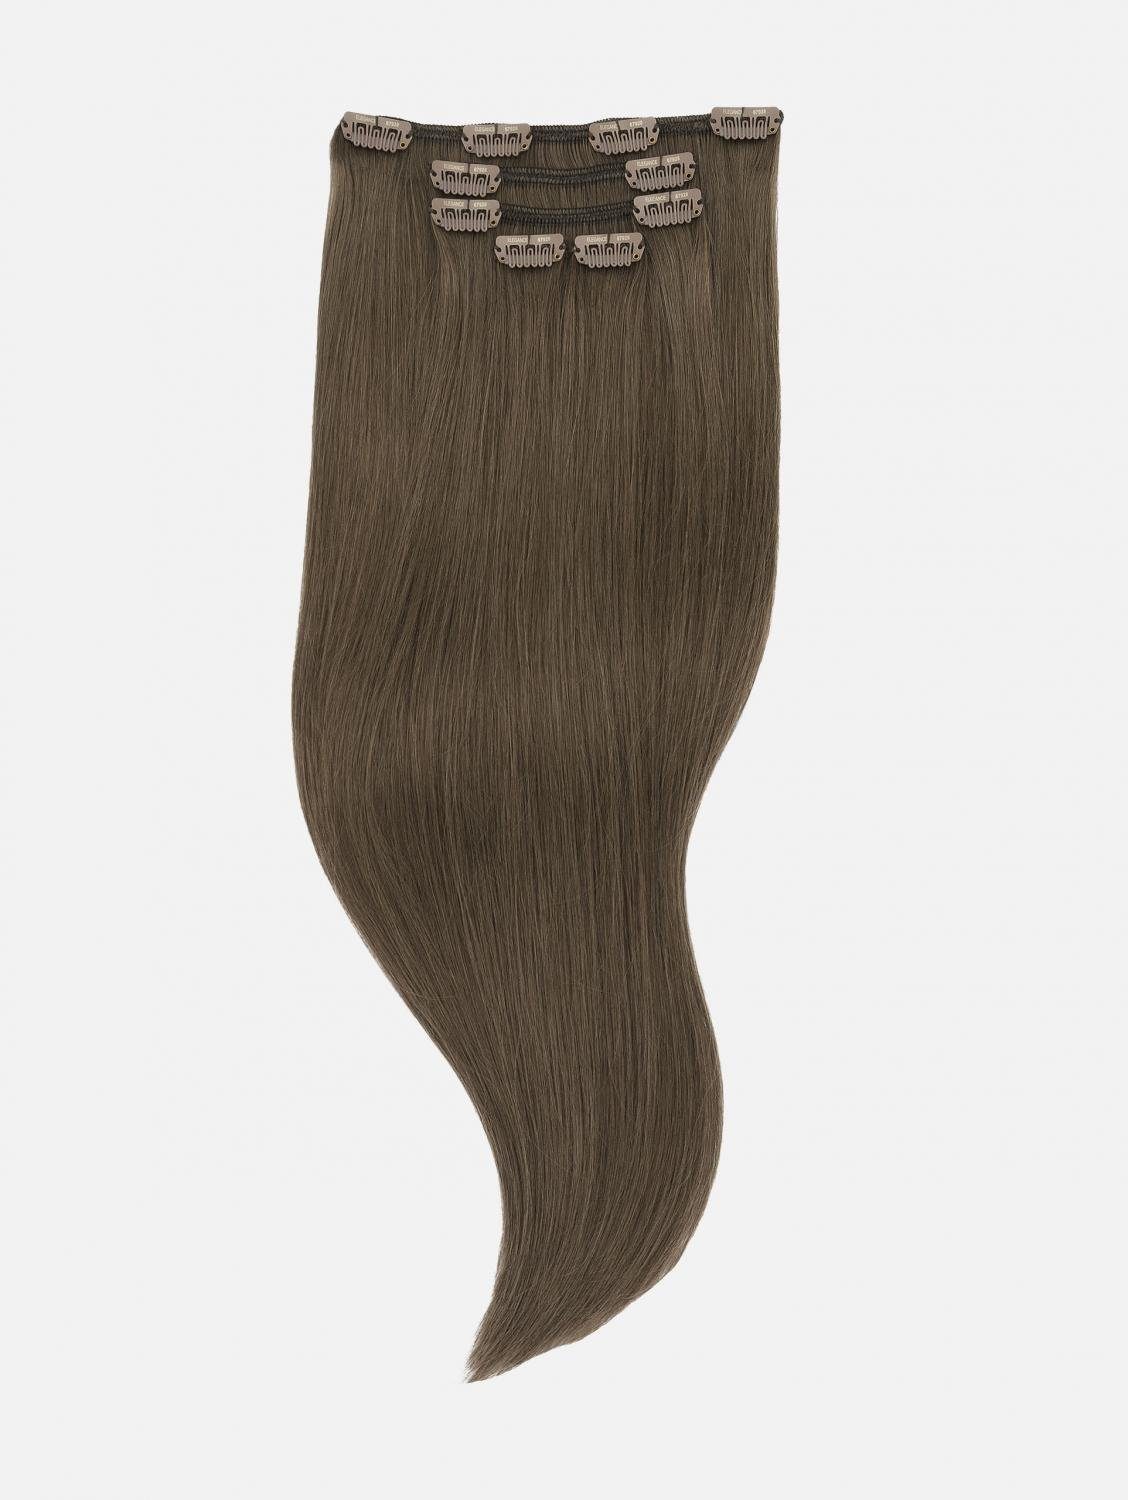 Brown) 50cm, Echthaar - - Clip-In Echthaar 5-teilig Extensions Echthaar-Extension Seidenglatt Ash (Natural Haarverlängerung EH 40cm, #5 NATURAL